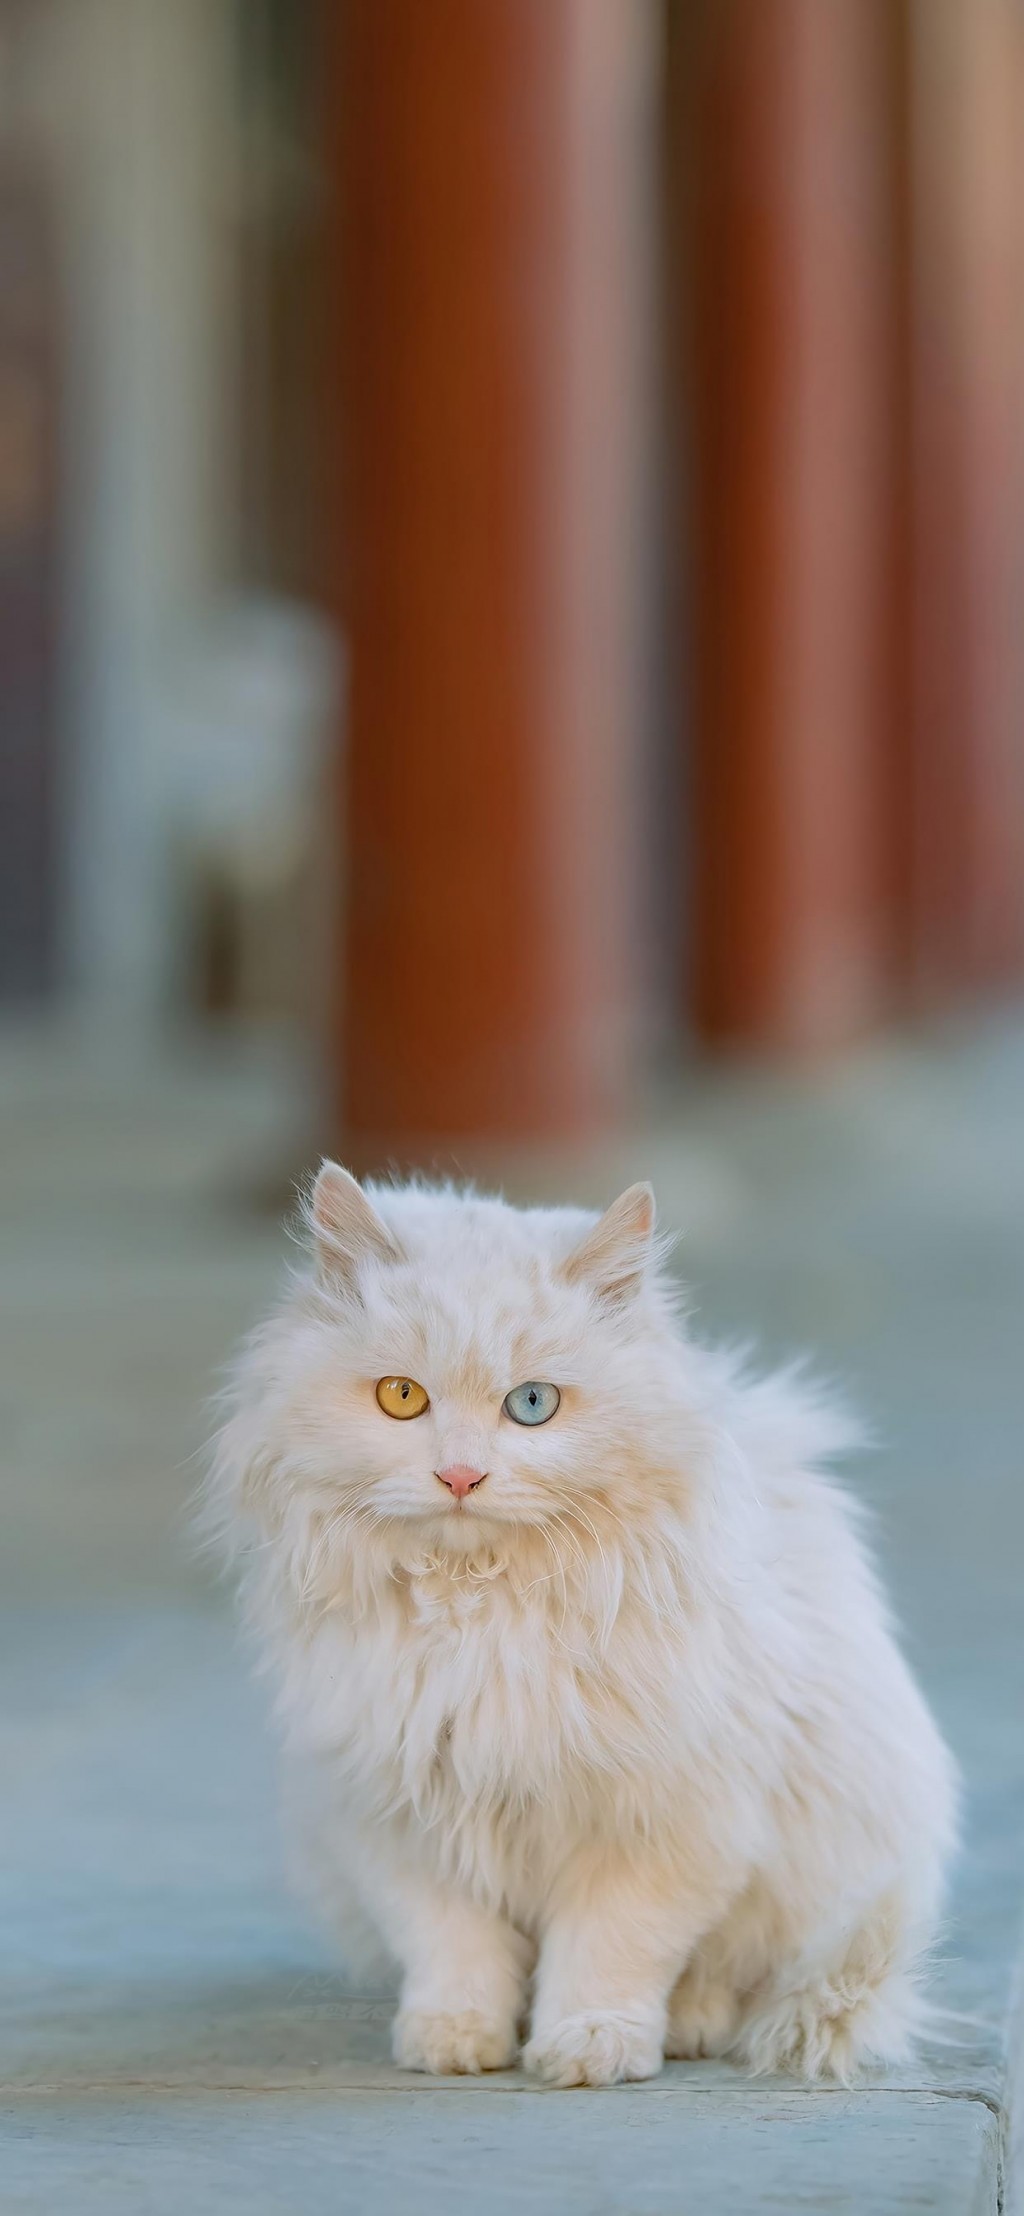 双瞳色的猫咪摄影手机壁纸